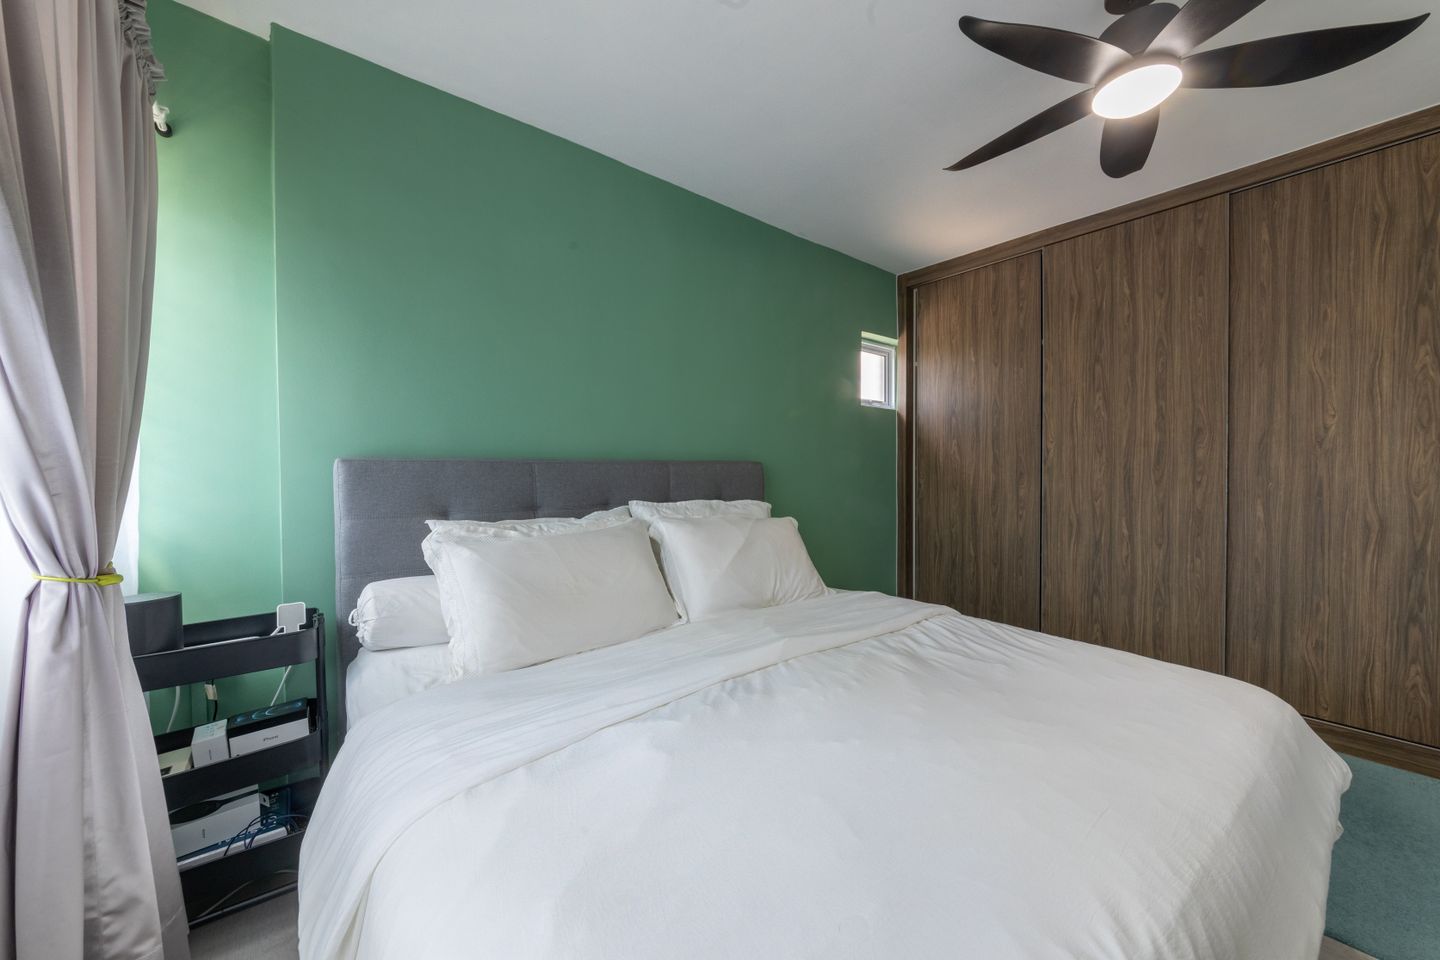 Minimalist Bedroom Design With Maximum Storage - Livspace